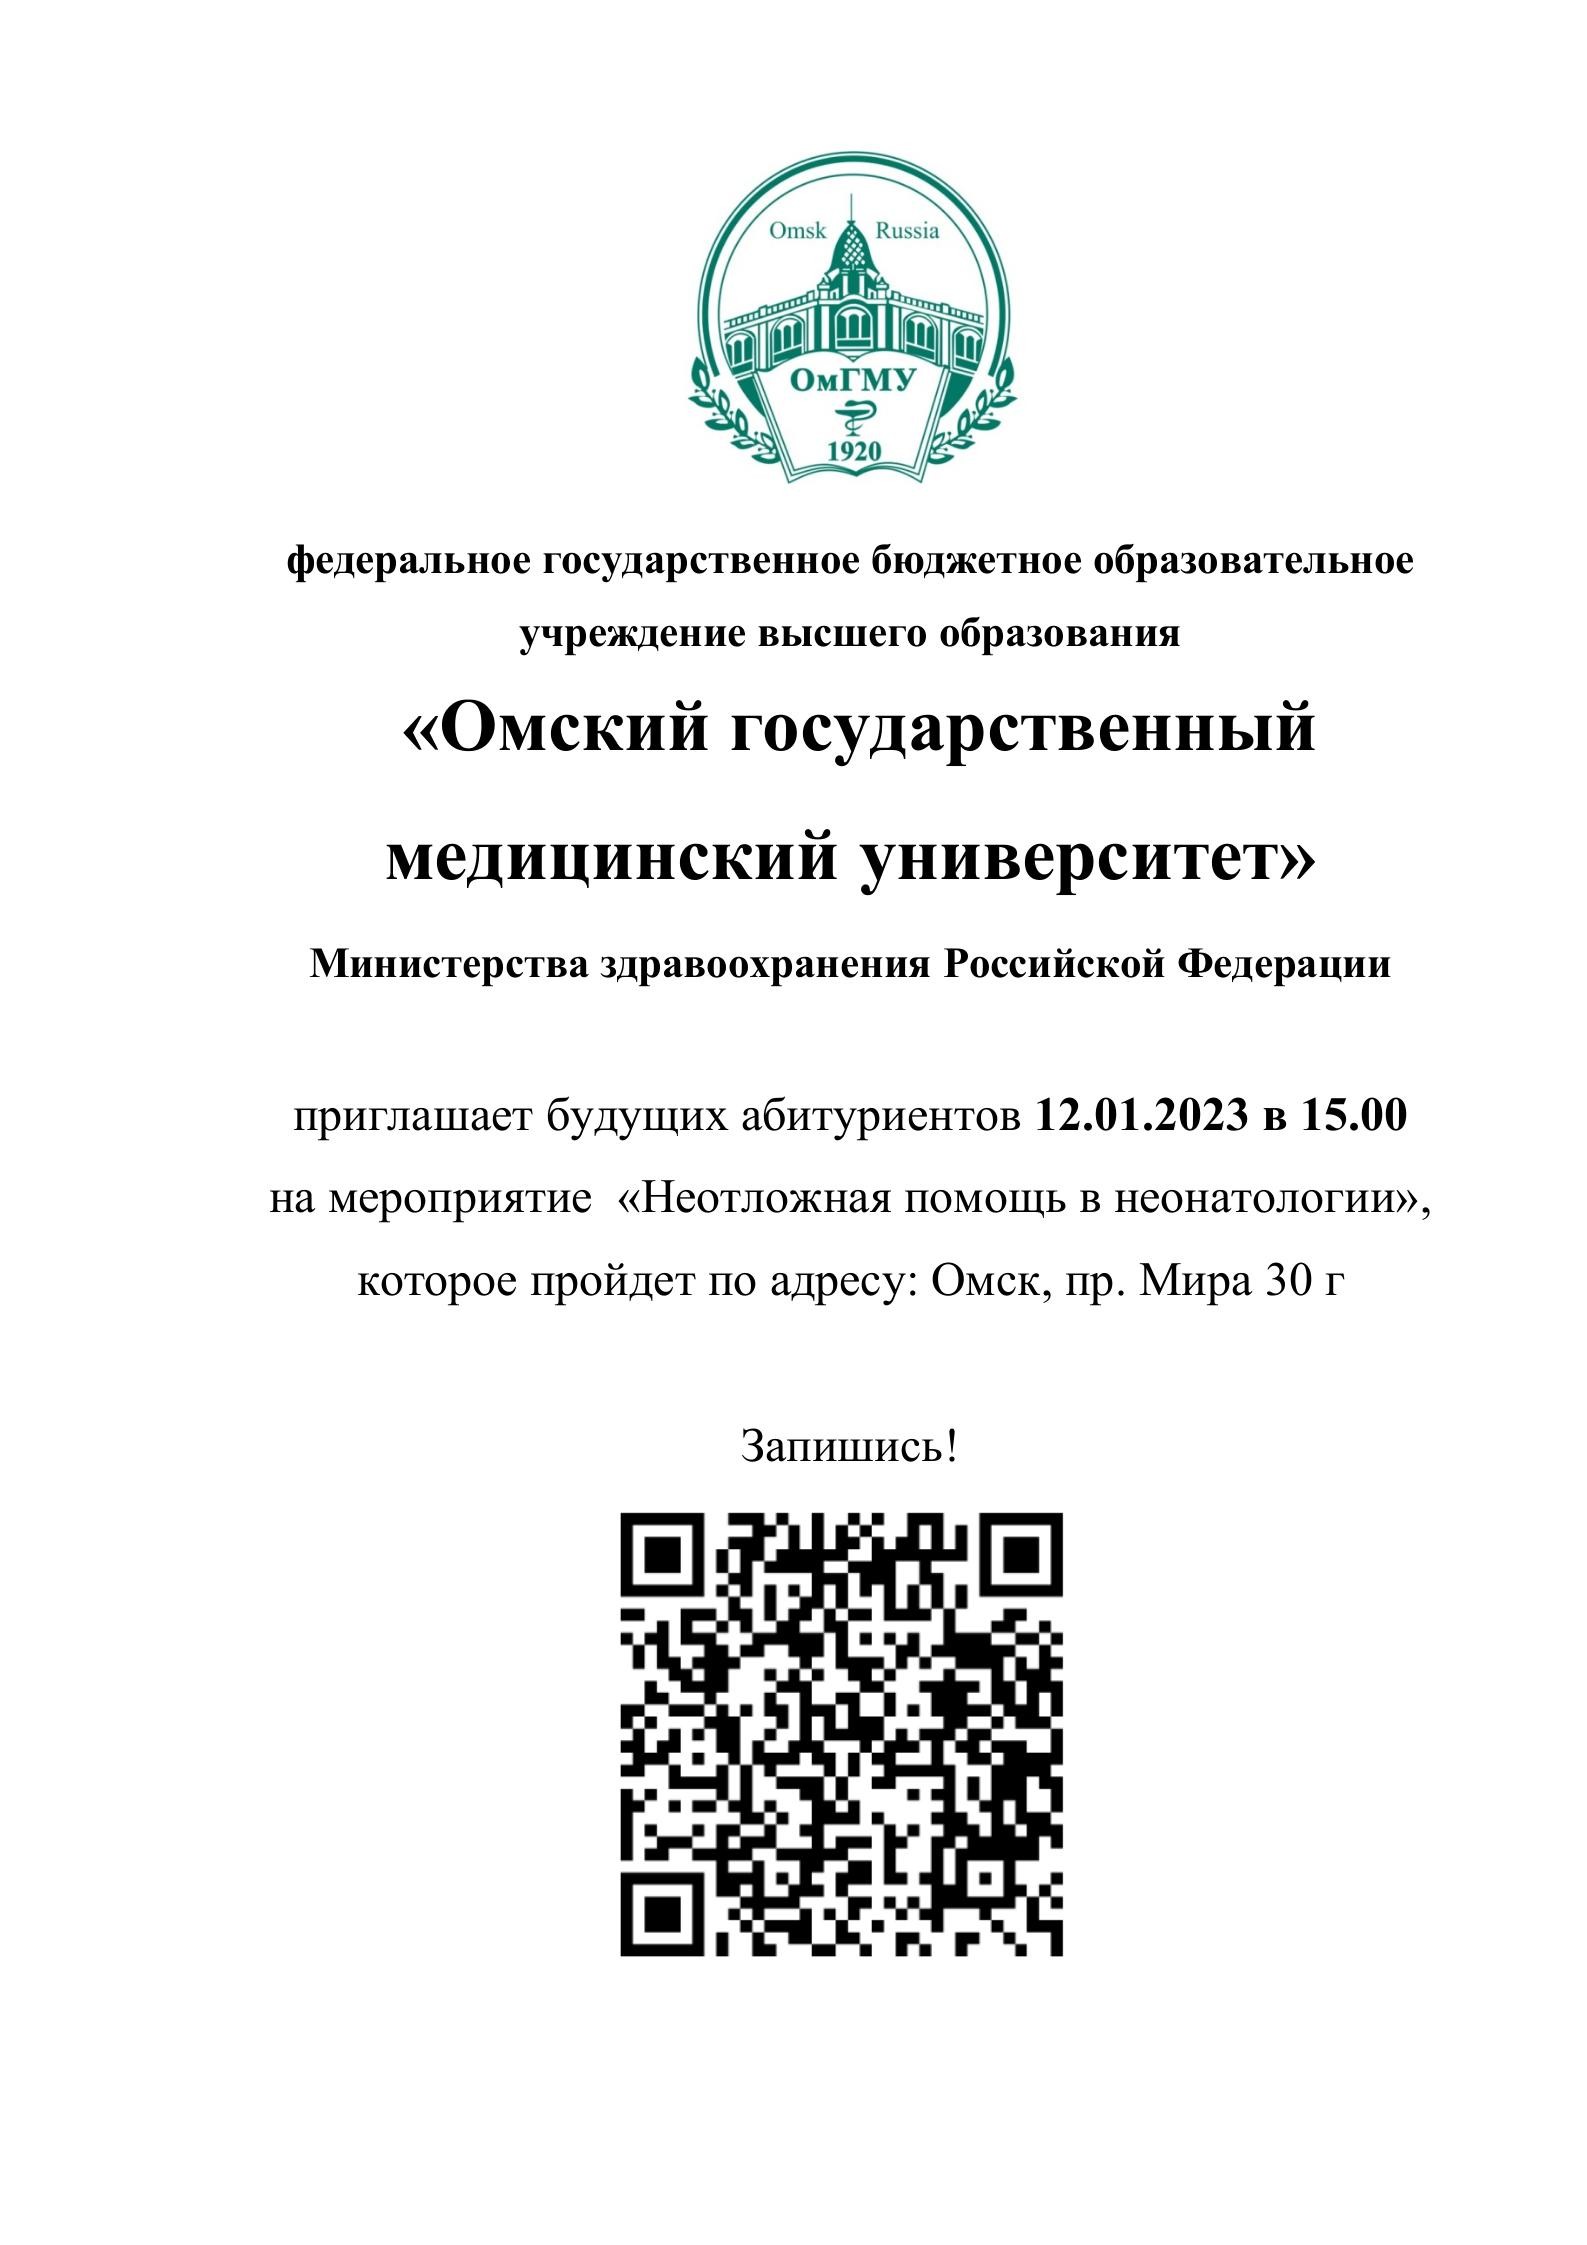 «Омский государственный медицинский университет» приглашает будущих абитуриентов